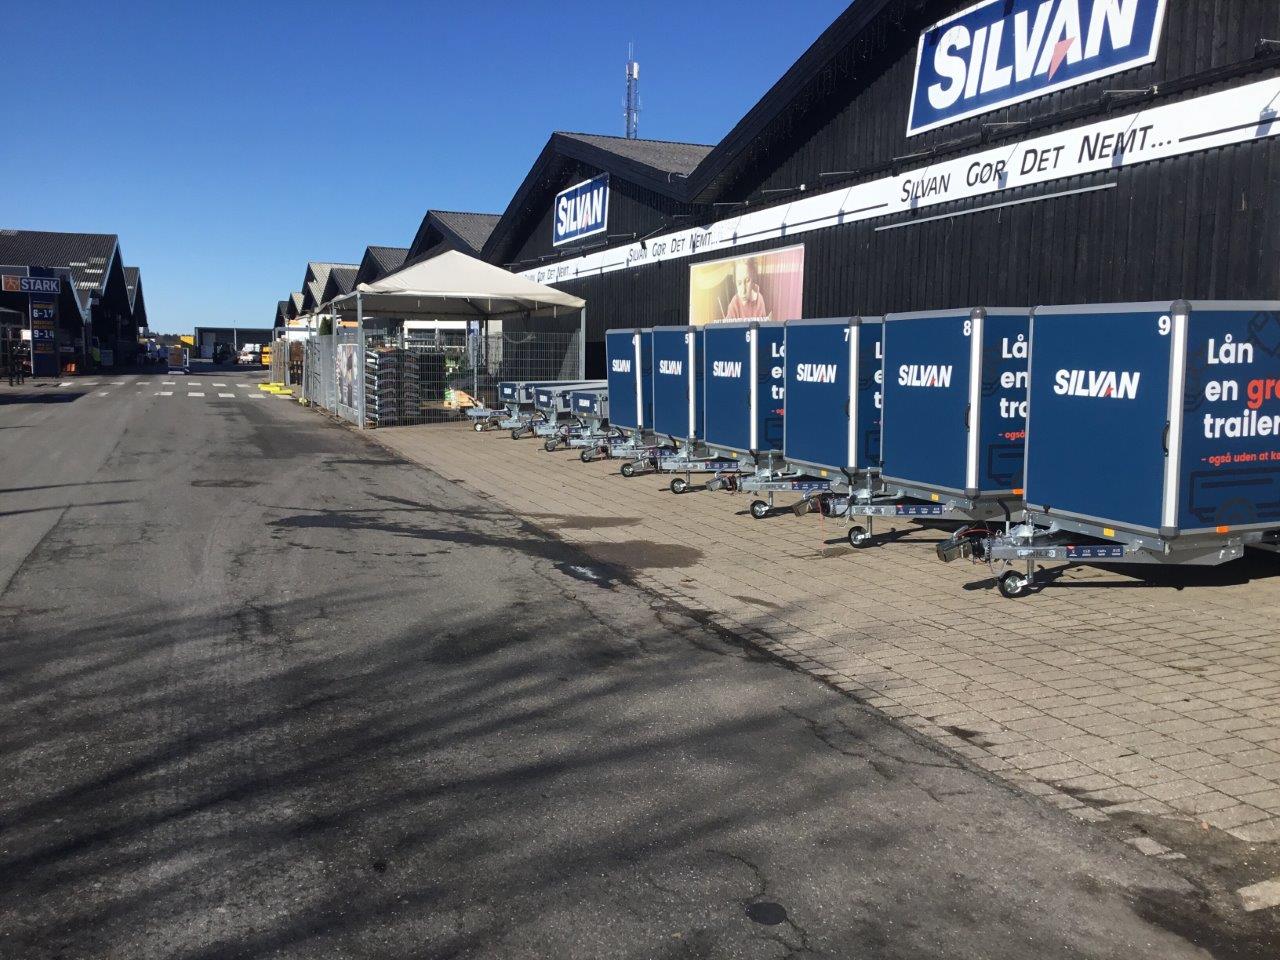 Silvan i Køge runder 12000 gratis trailerudlån og udvider flåden